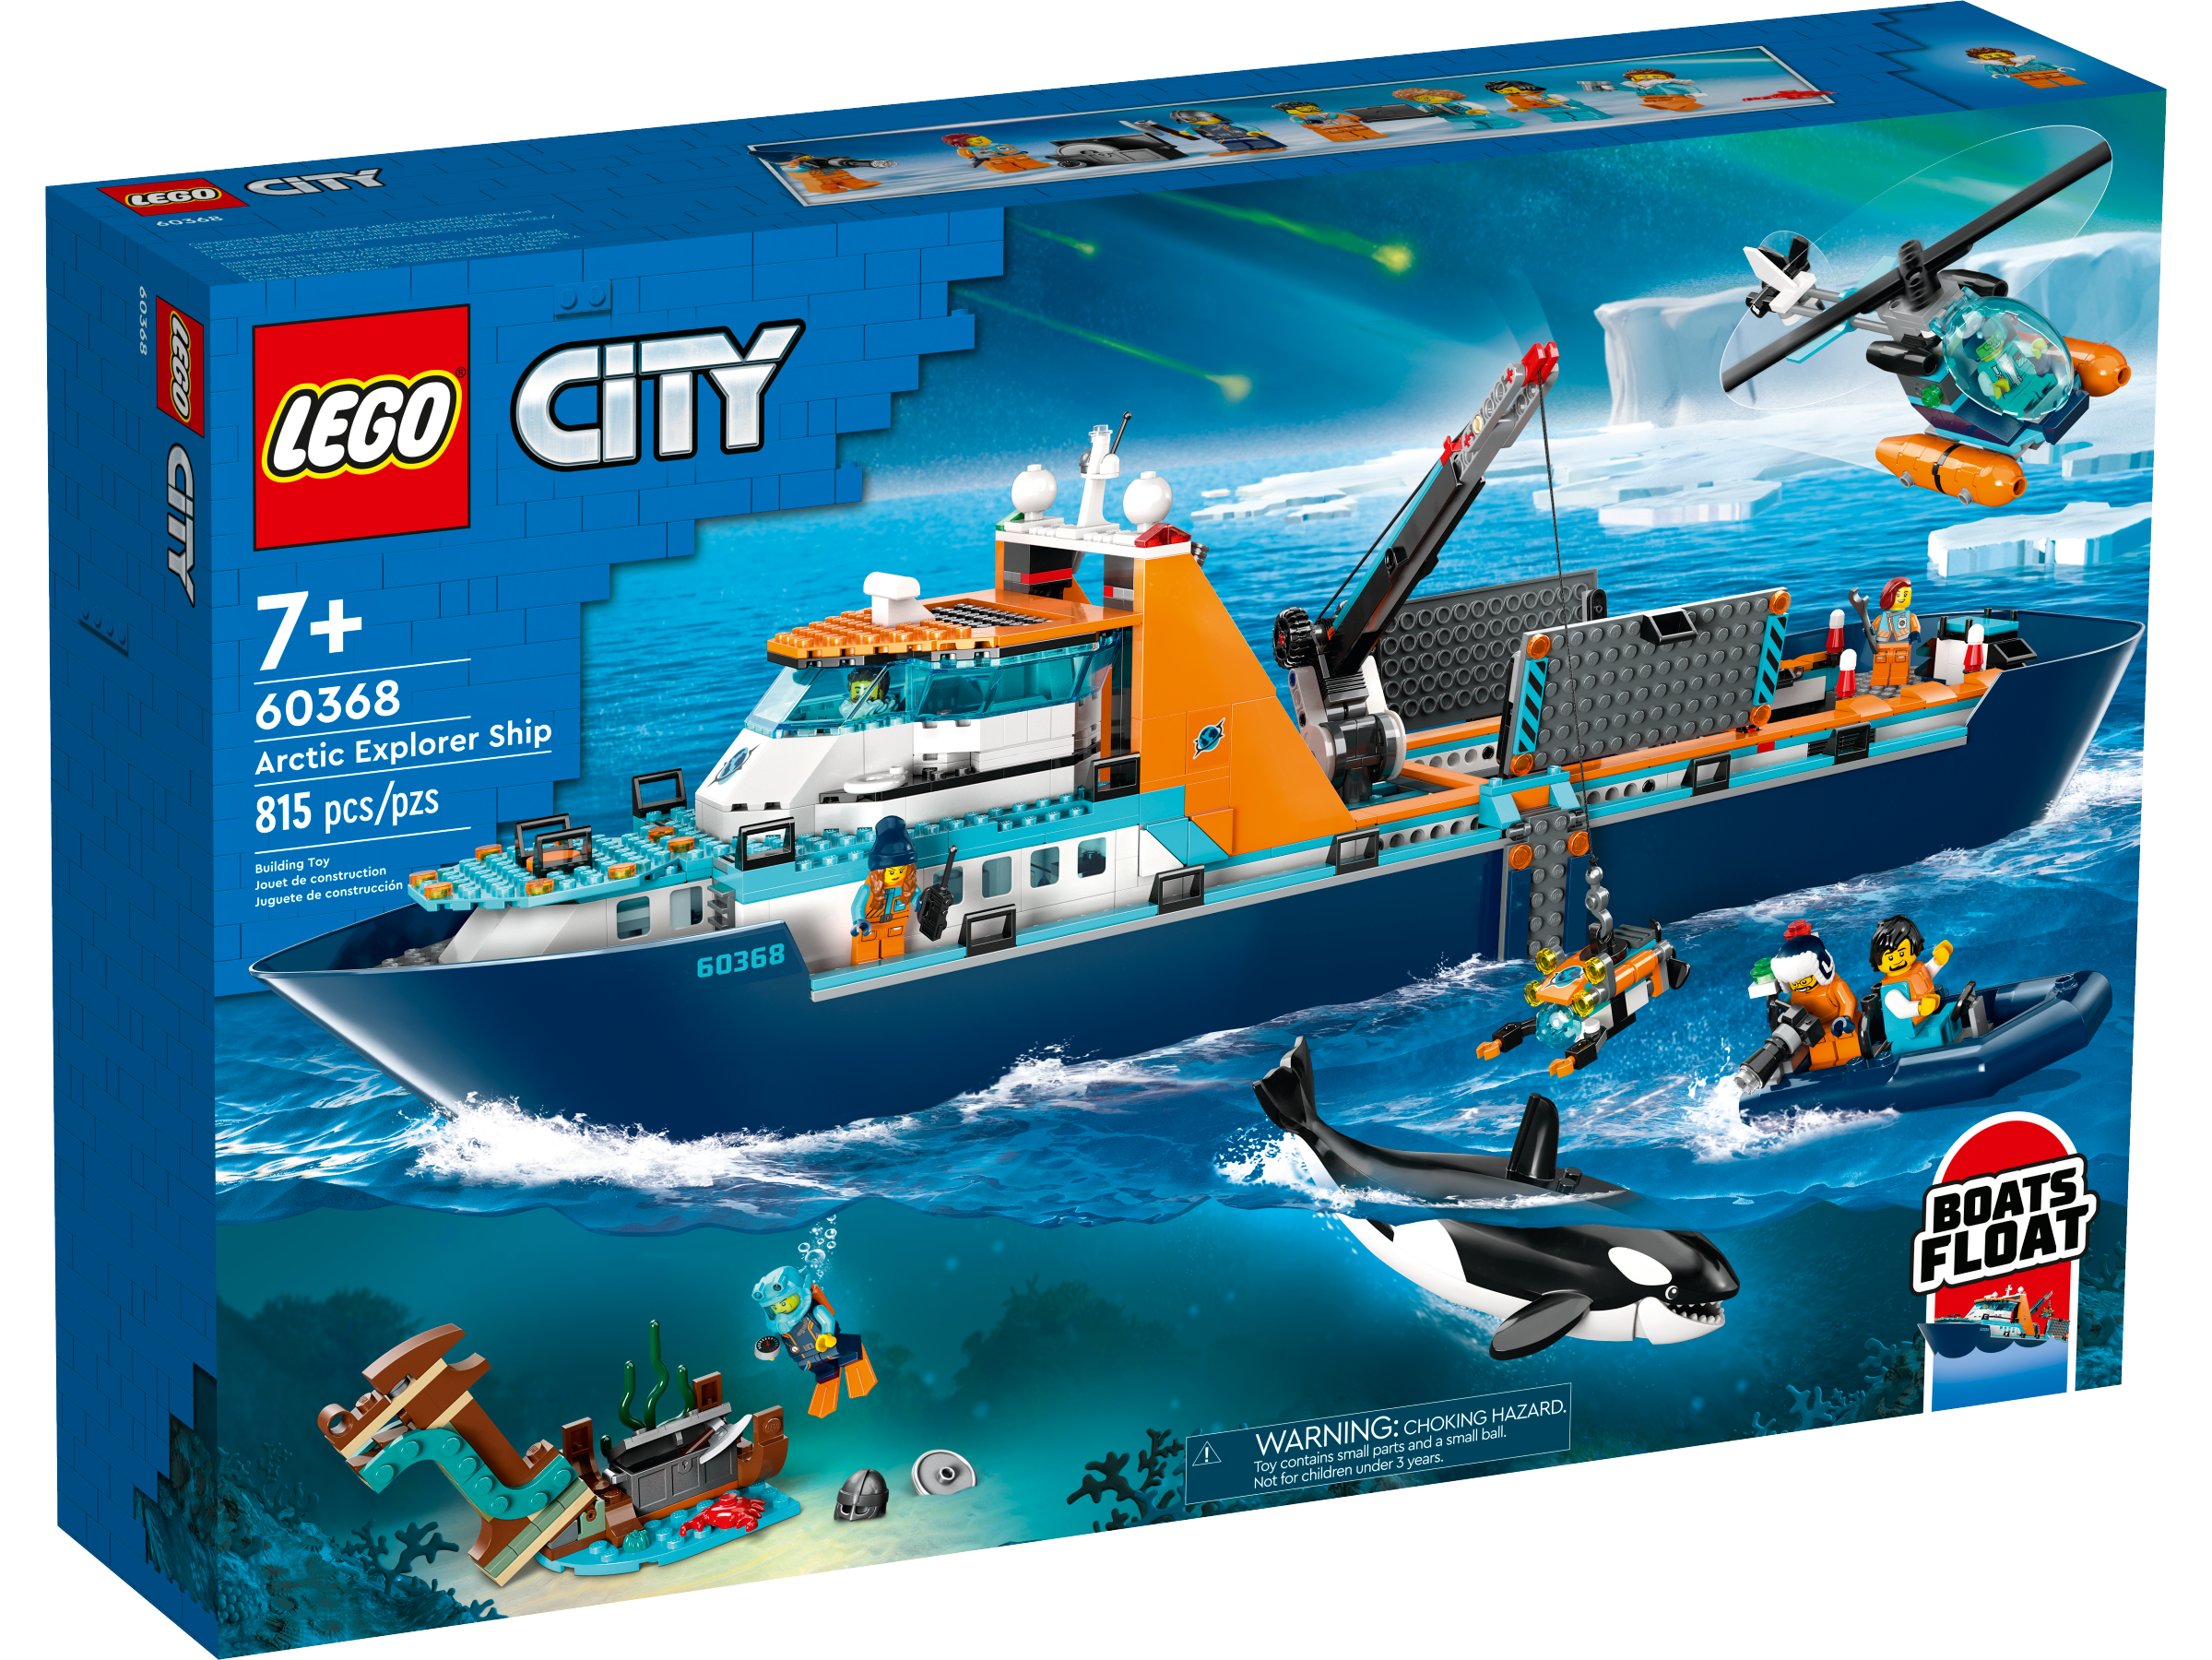 LEGO City Arktis-Forschungsschiff (60368) - im GOLDSTIEN.SHOP verfügbar mit Gratisversand ab Schweizer Lager! (5702017416281)